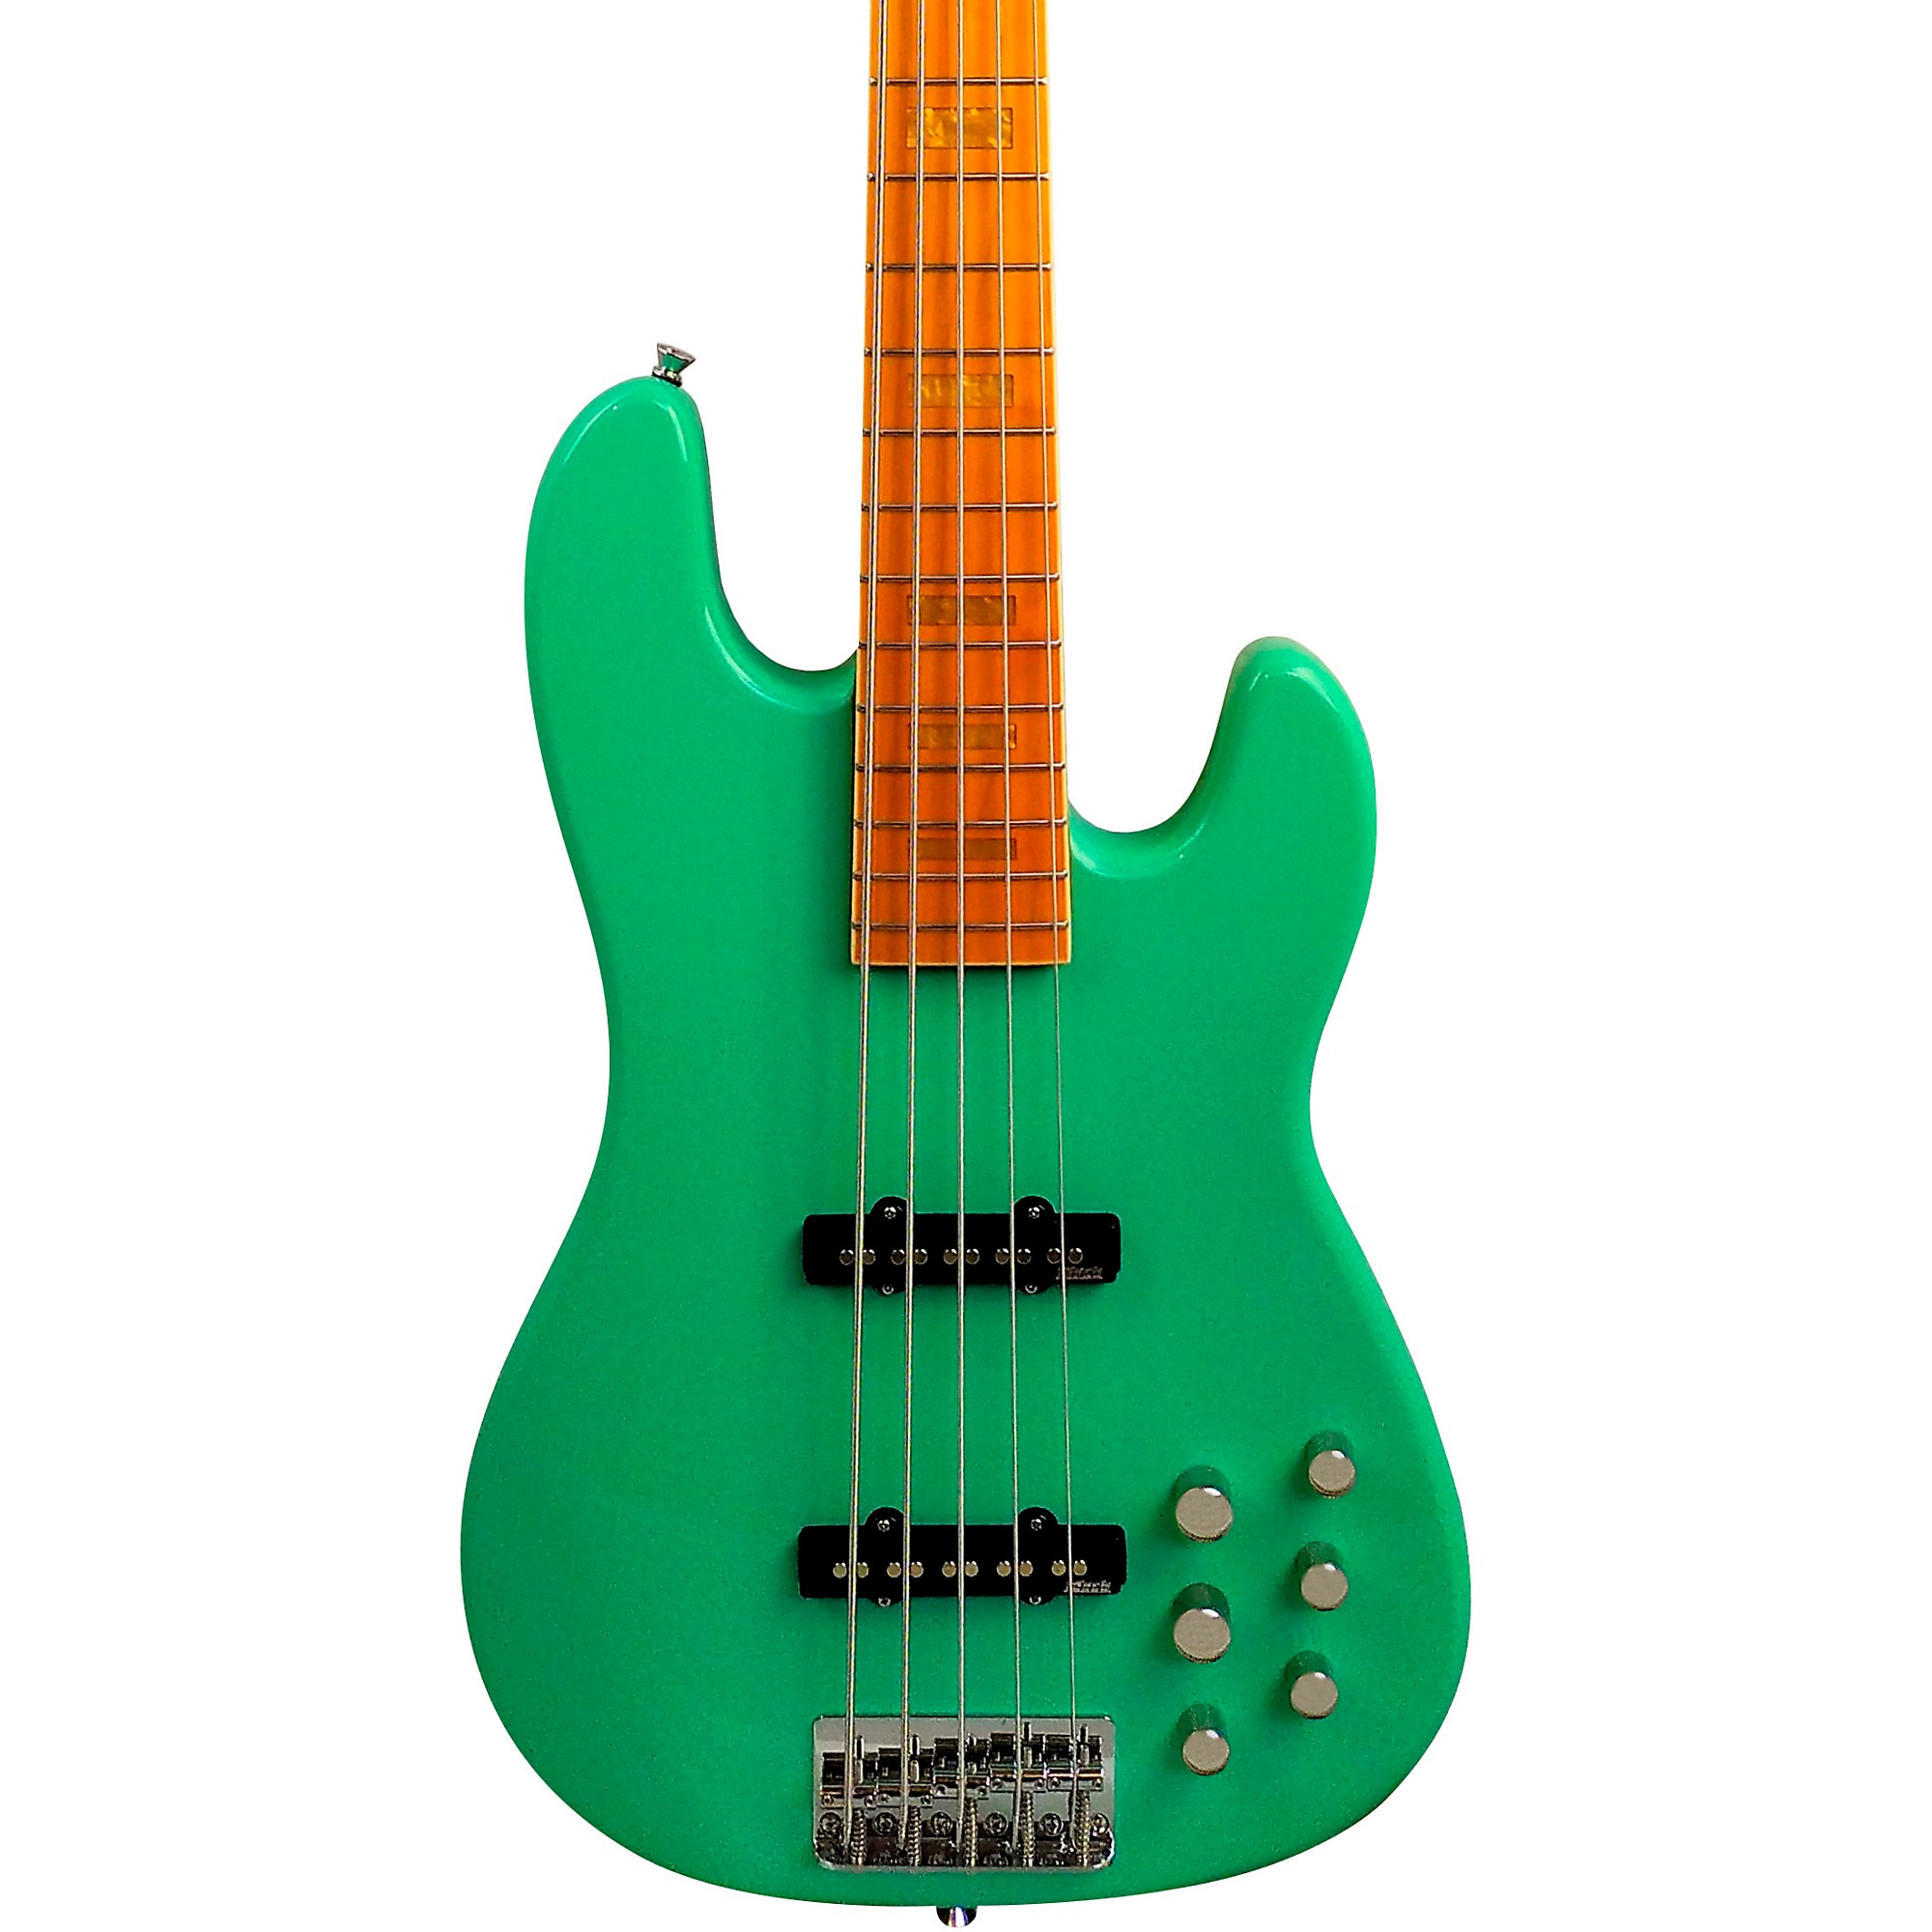 Markbass GV5 Gloxy Val MP 5-струнная электрическая бас-гитара Surf Green markbass mb gv 5 gloxy val black cr mp 5 струнная бас гитара с чехлом jj активный преамп цвет черный